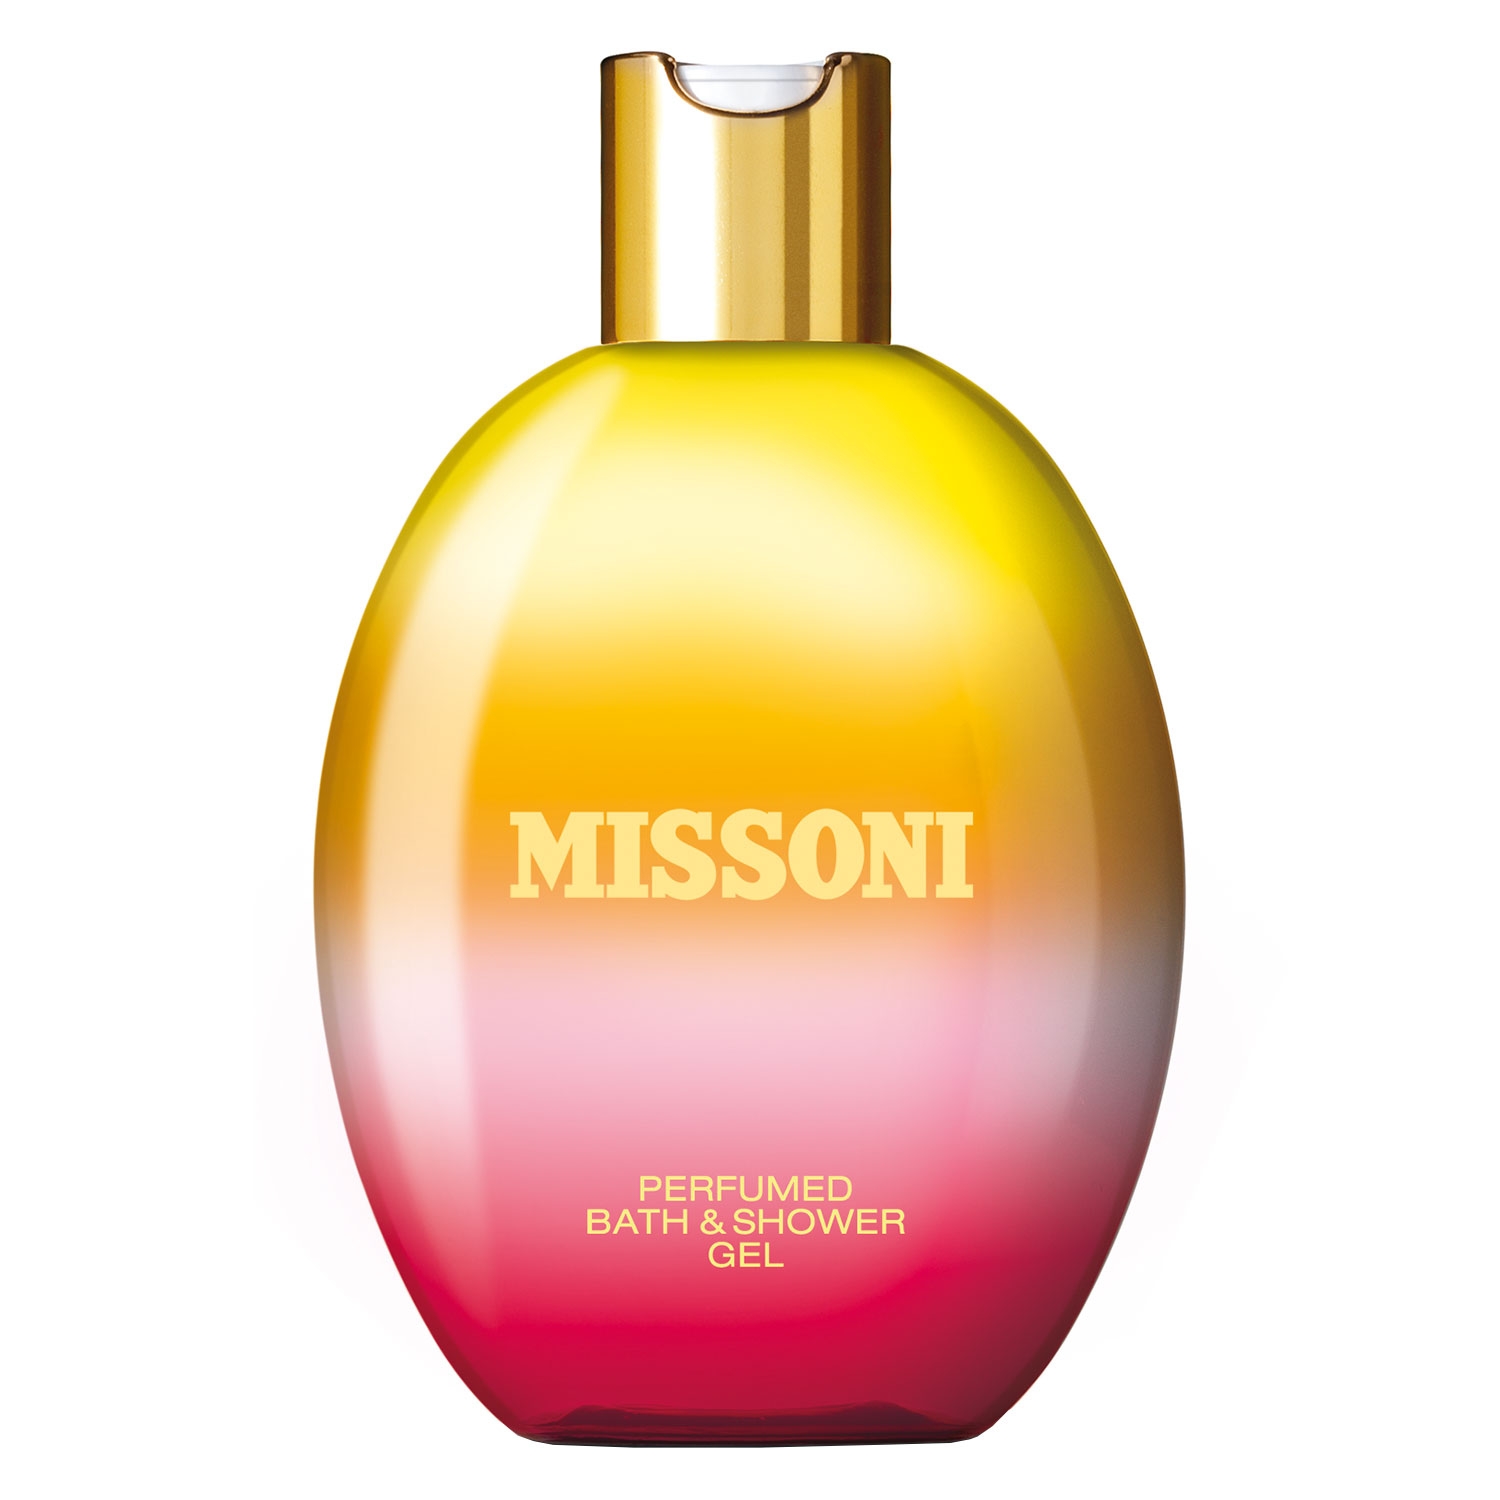 Produktbild von Missoni Femme - Bath & Shower Gel